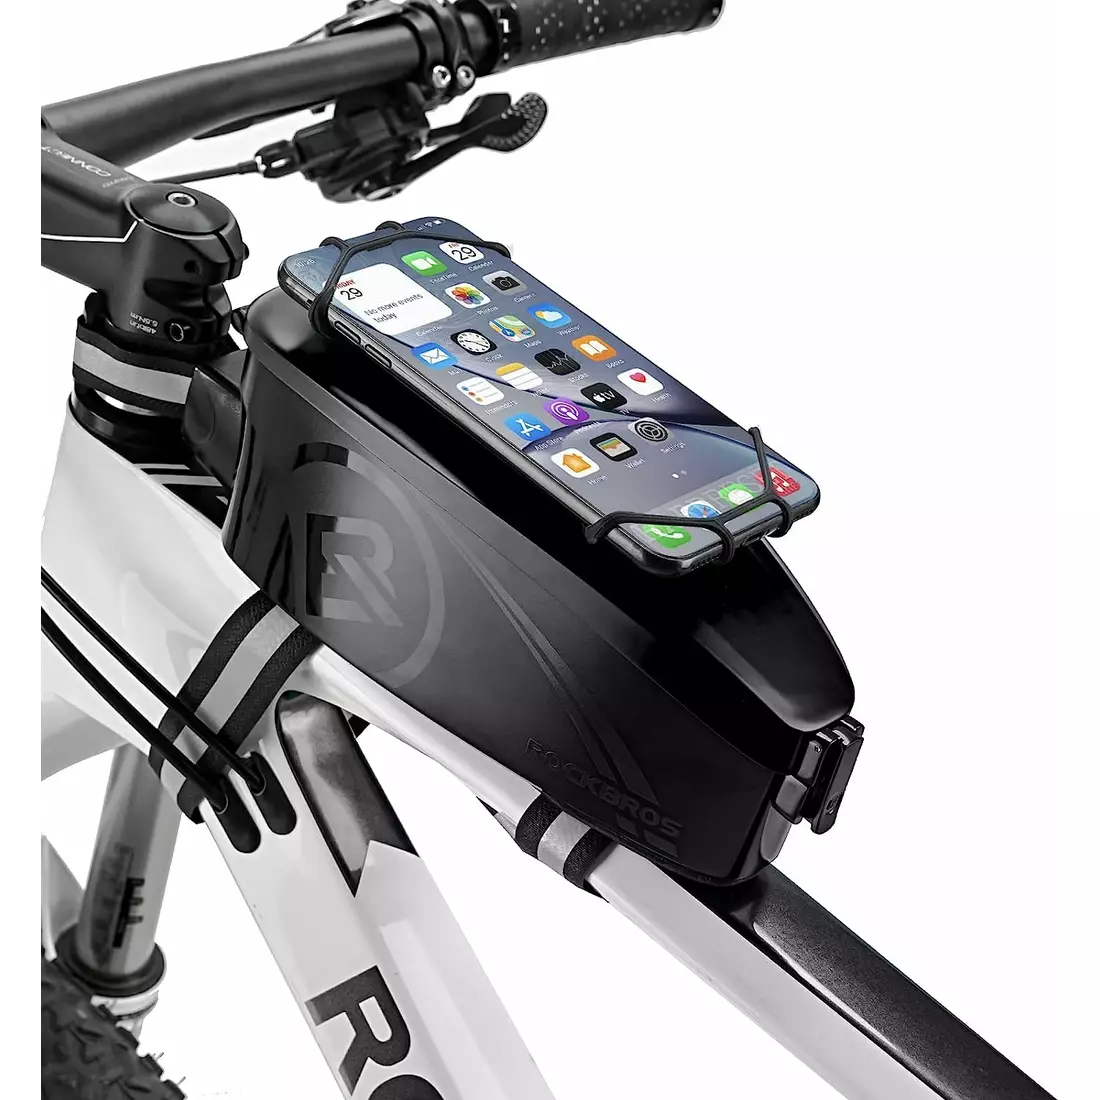 Rockbros sacoș de bicicletă pentru tubul superior cu suport pentru telefon, negru 30120018001